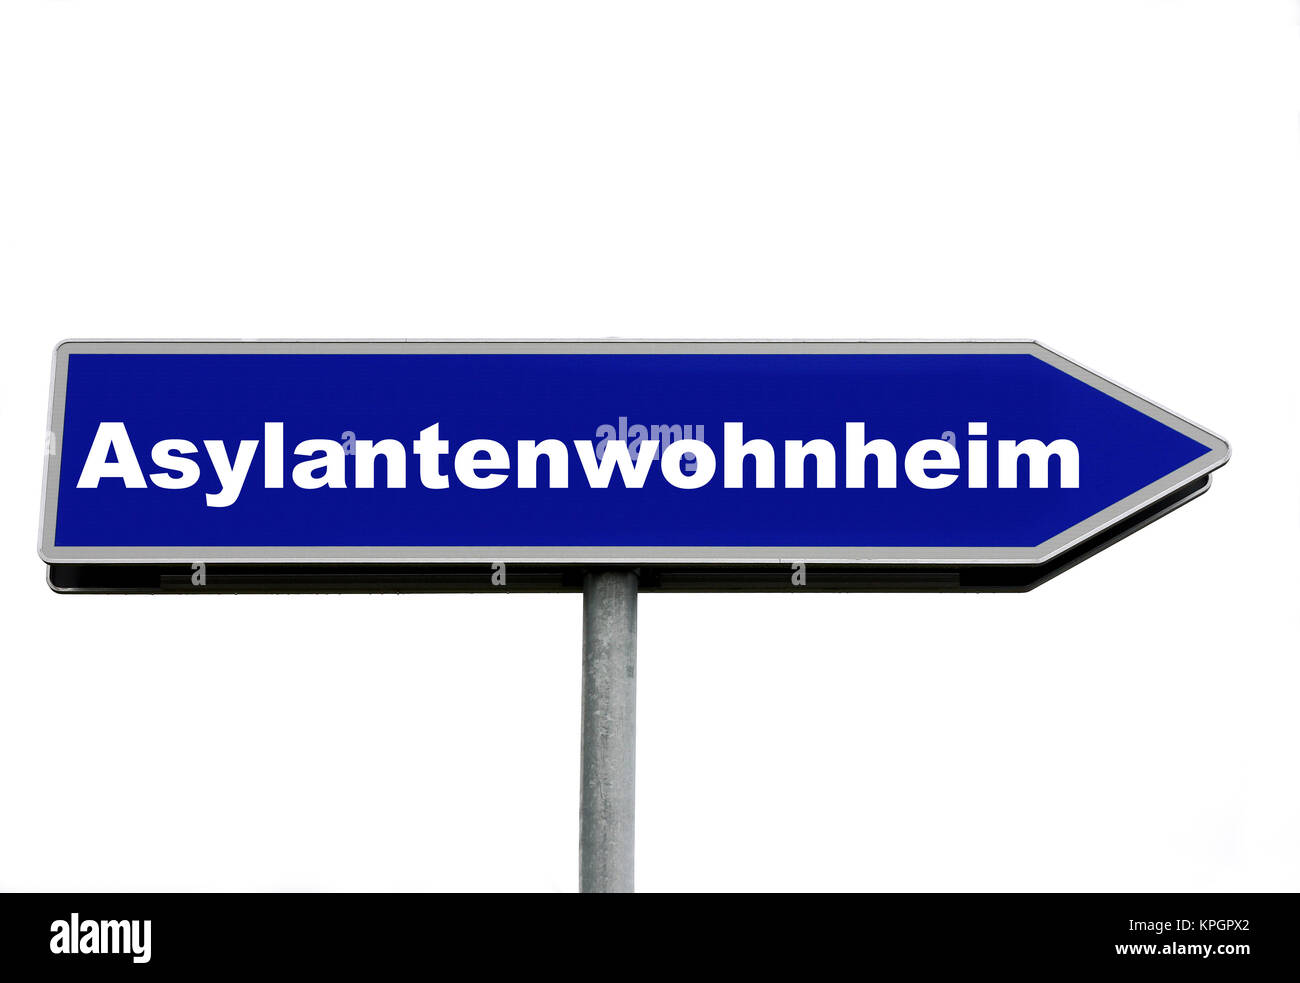 Asylantenwohnheim Stock Photo